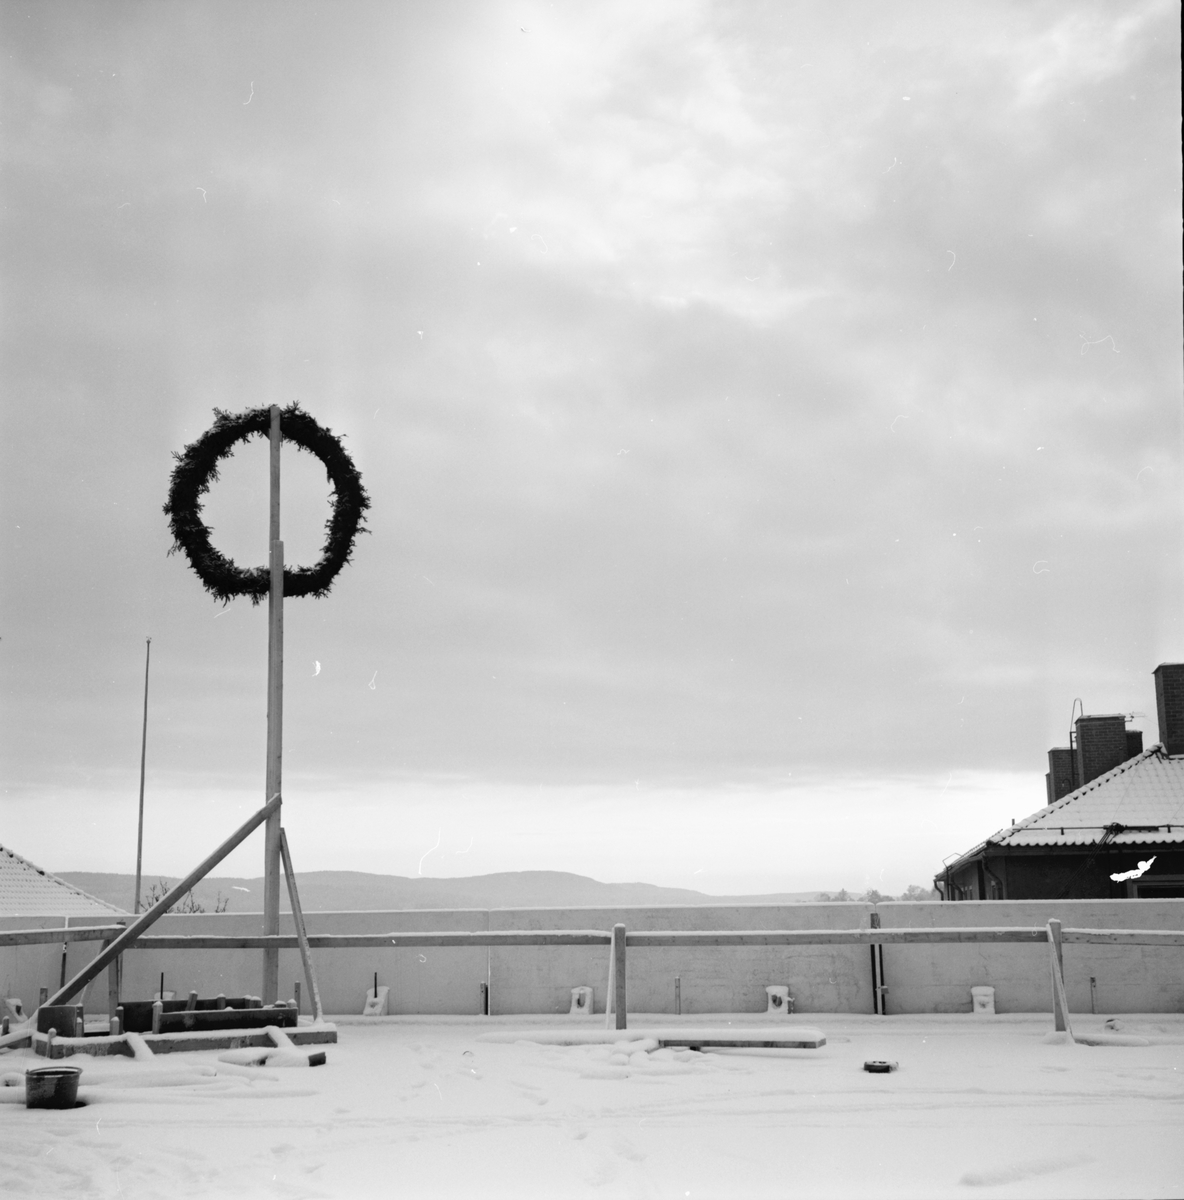 Tempobygget,
Bollnäs,
16 Nov 1965